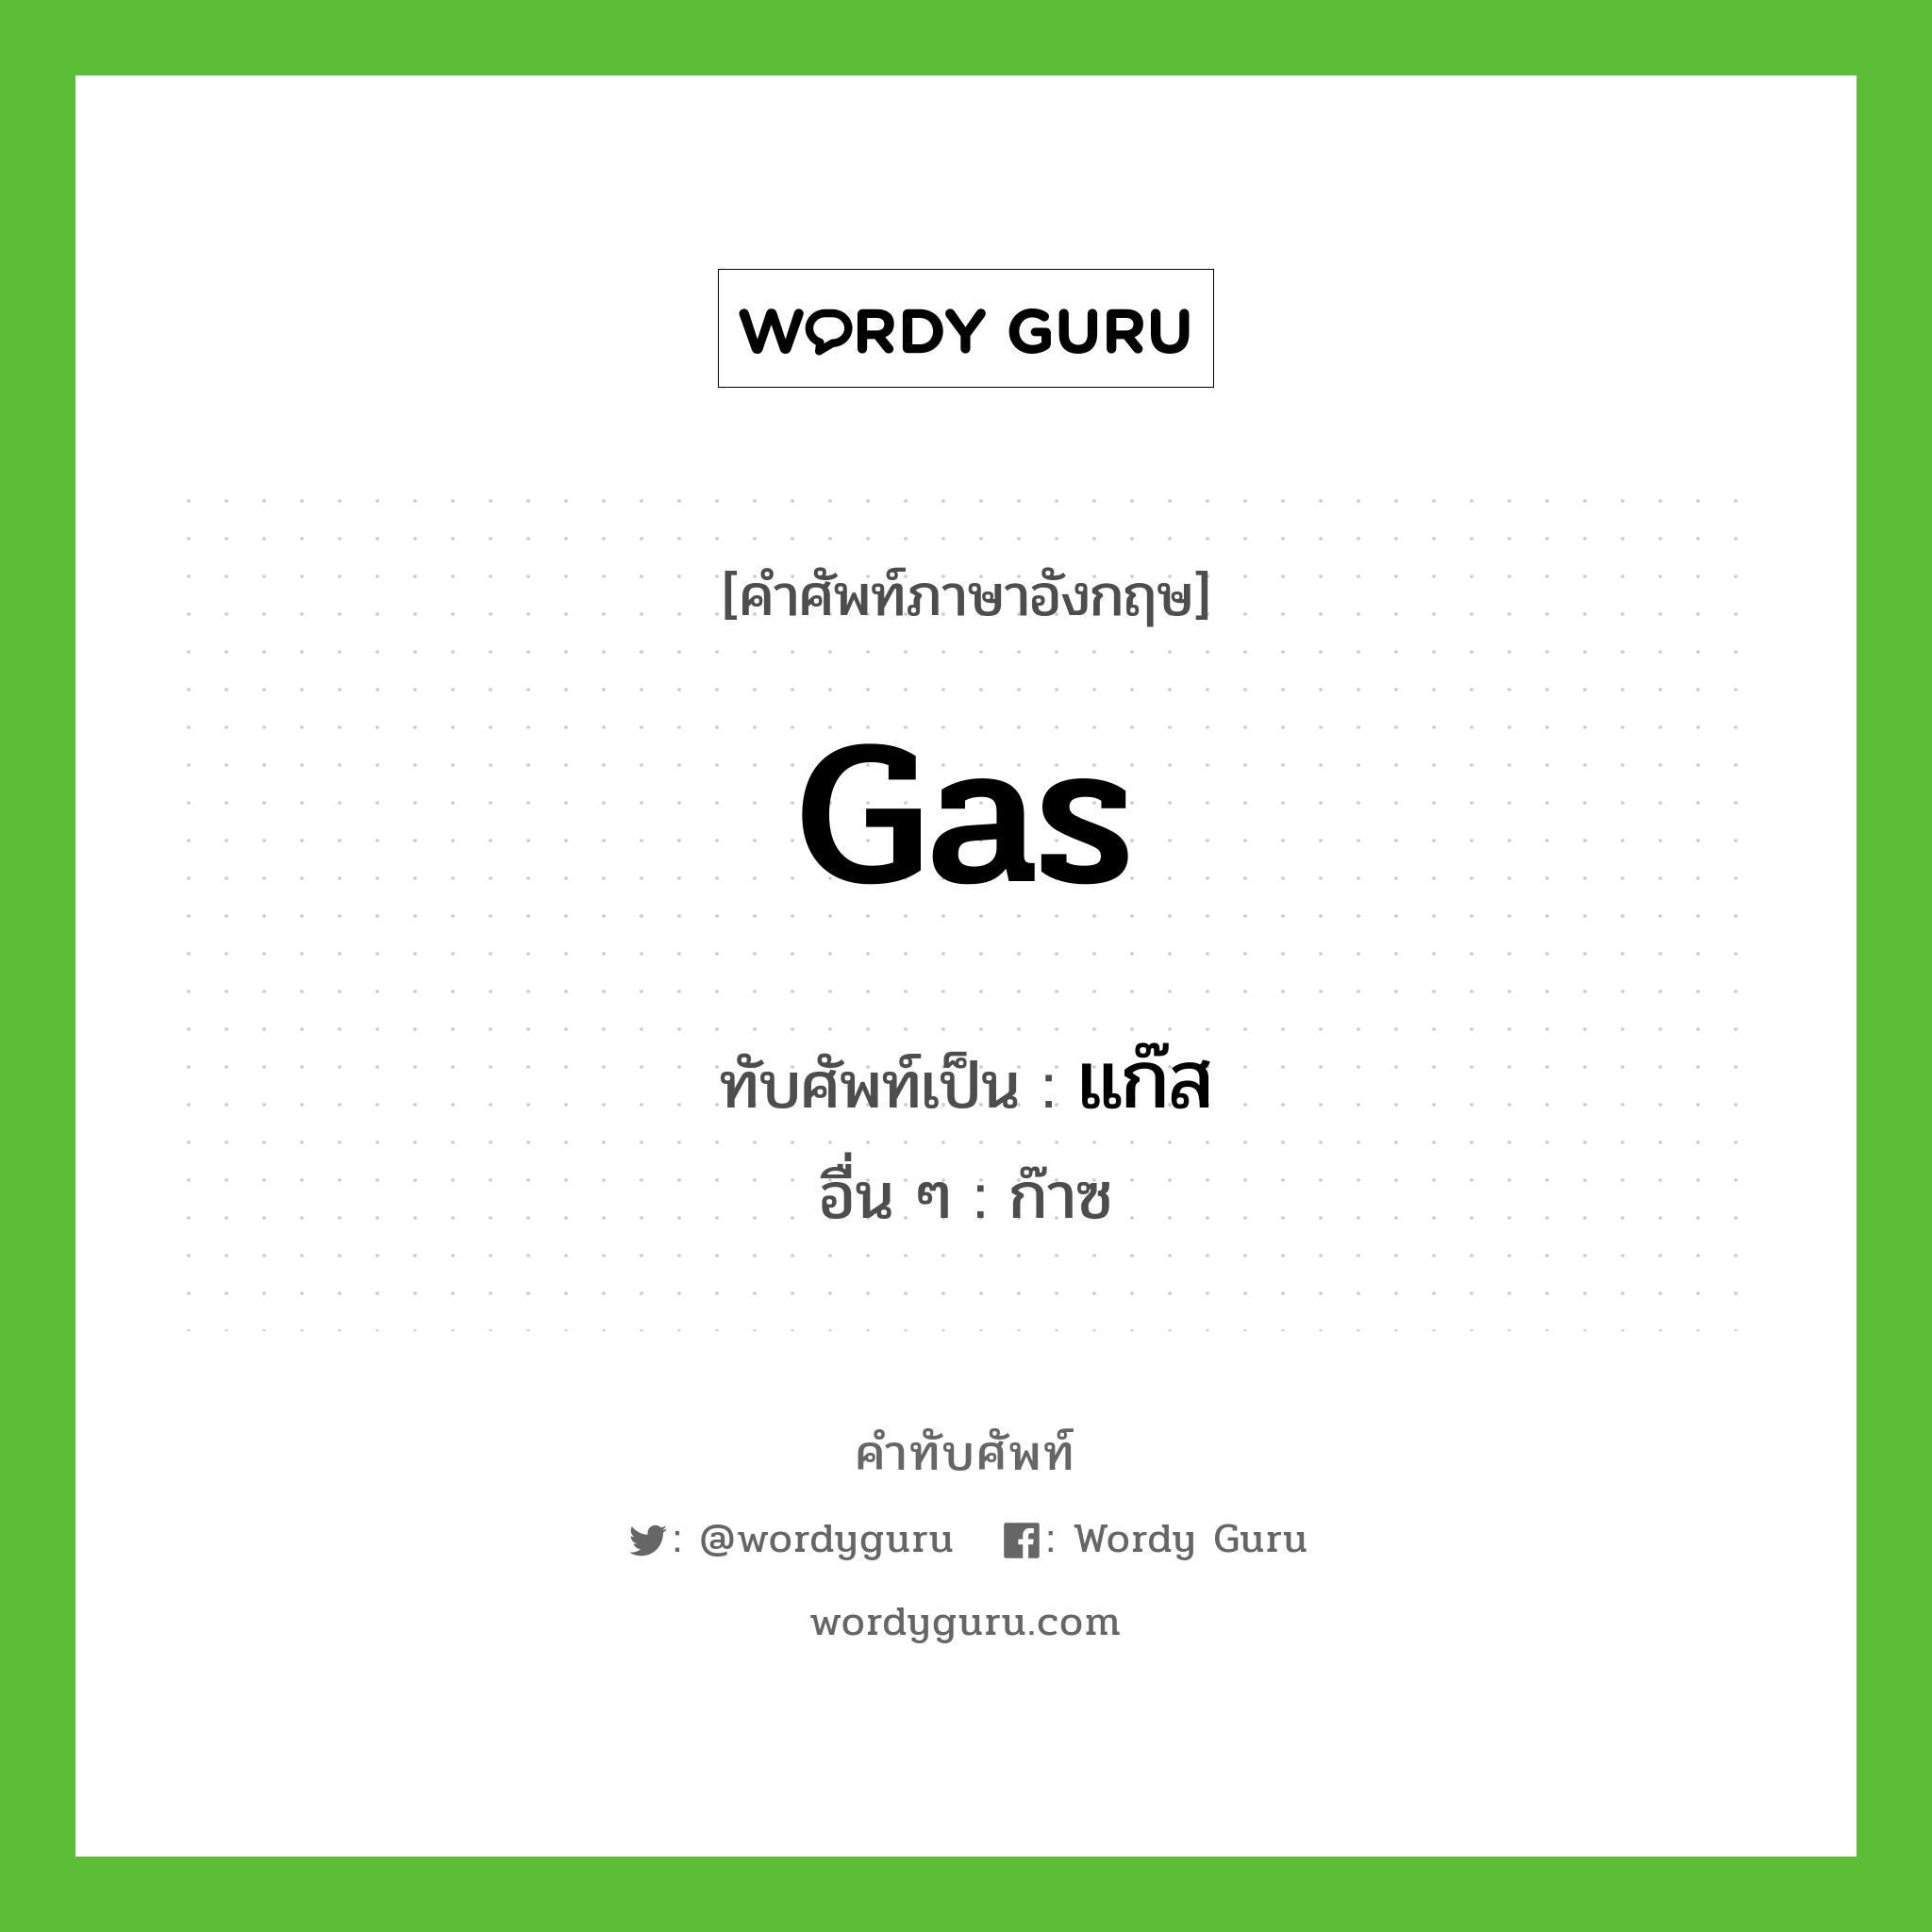 แก๊ส เขียนอย่างไร?, คำศัพท์ภาษาอังกฤษ แก๊ส ทับศัพท์เป็น gas อื่น ๆ ก๊าซ